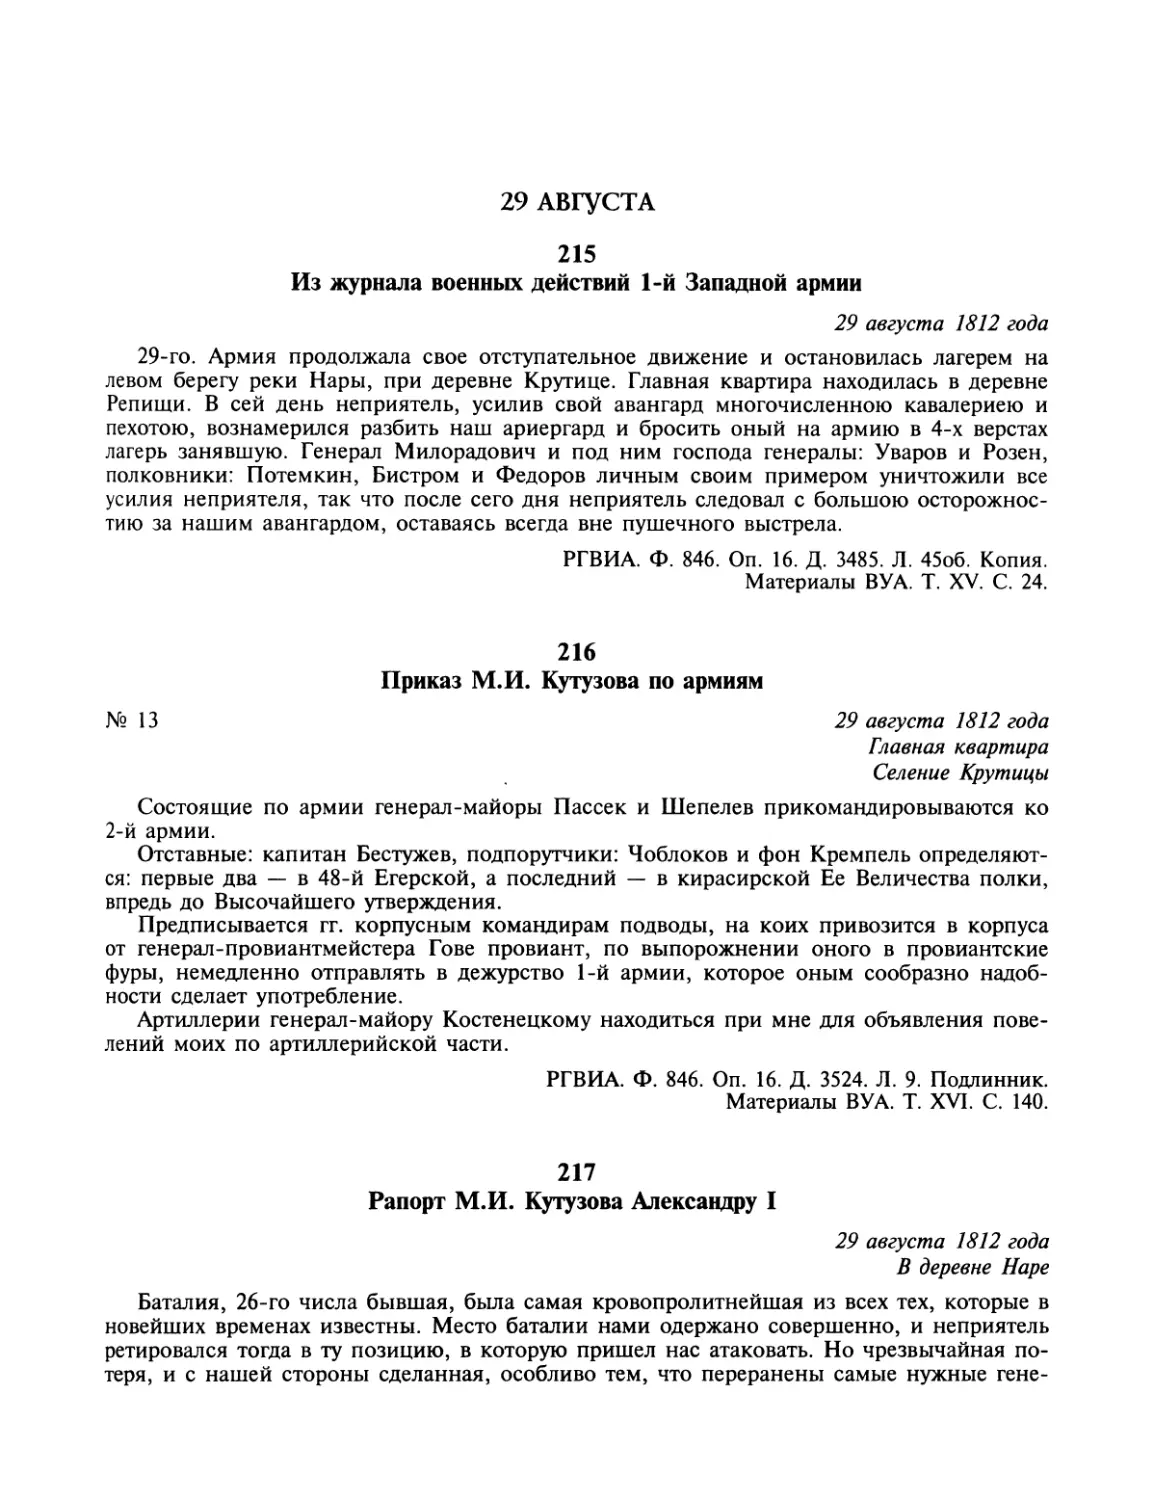 29 августа
Приказ М.И.Кутузова по армиям
Рапорт М.И.Кутузова Александру I